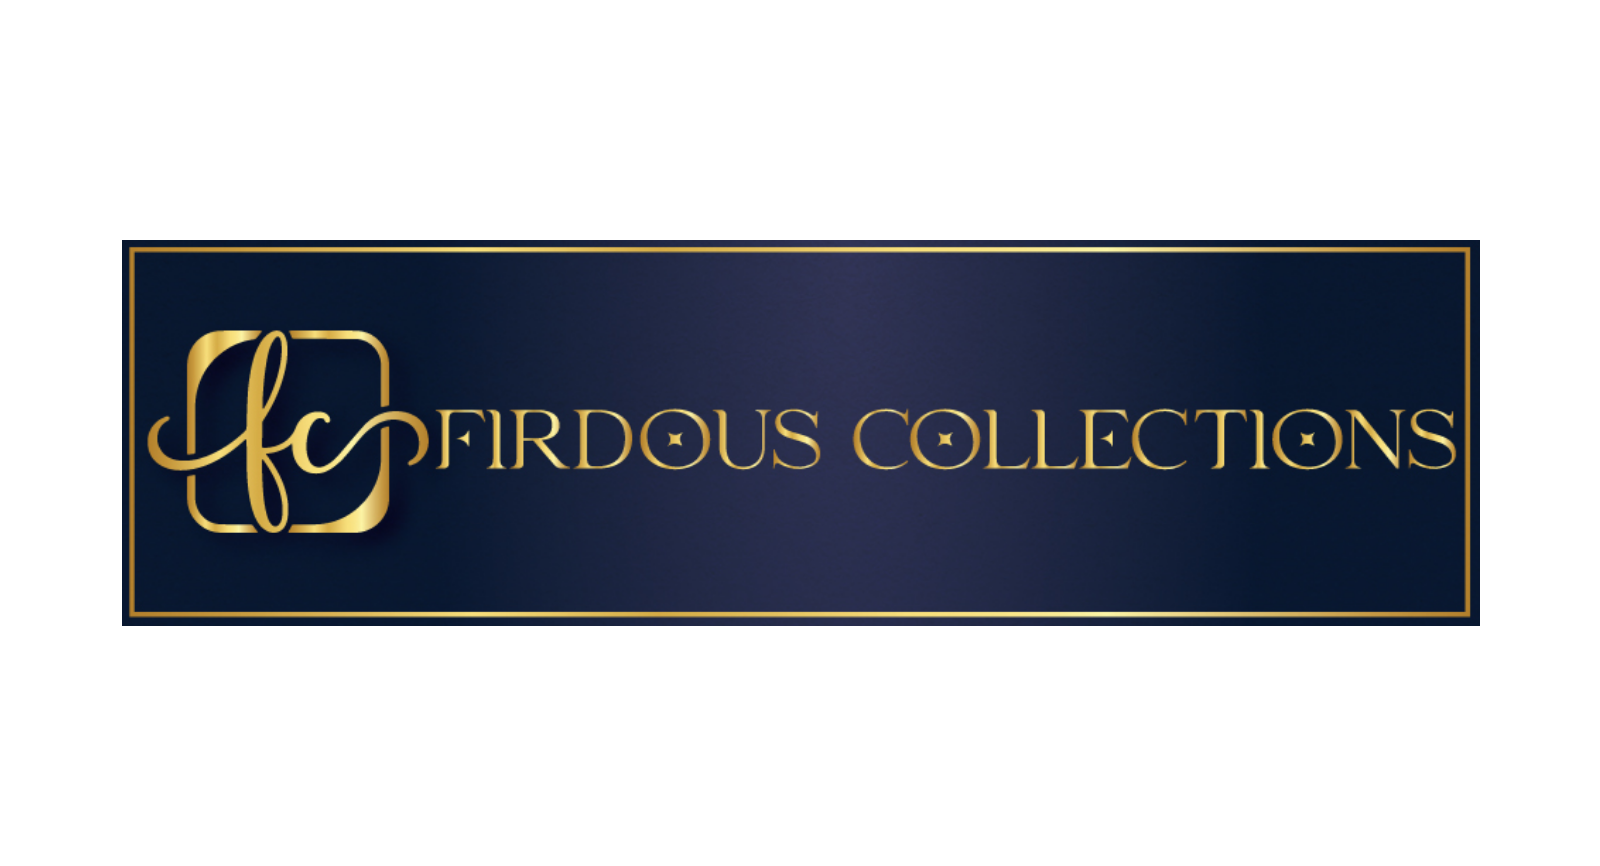 firdous collection logo